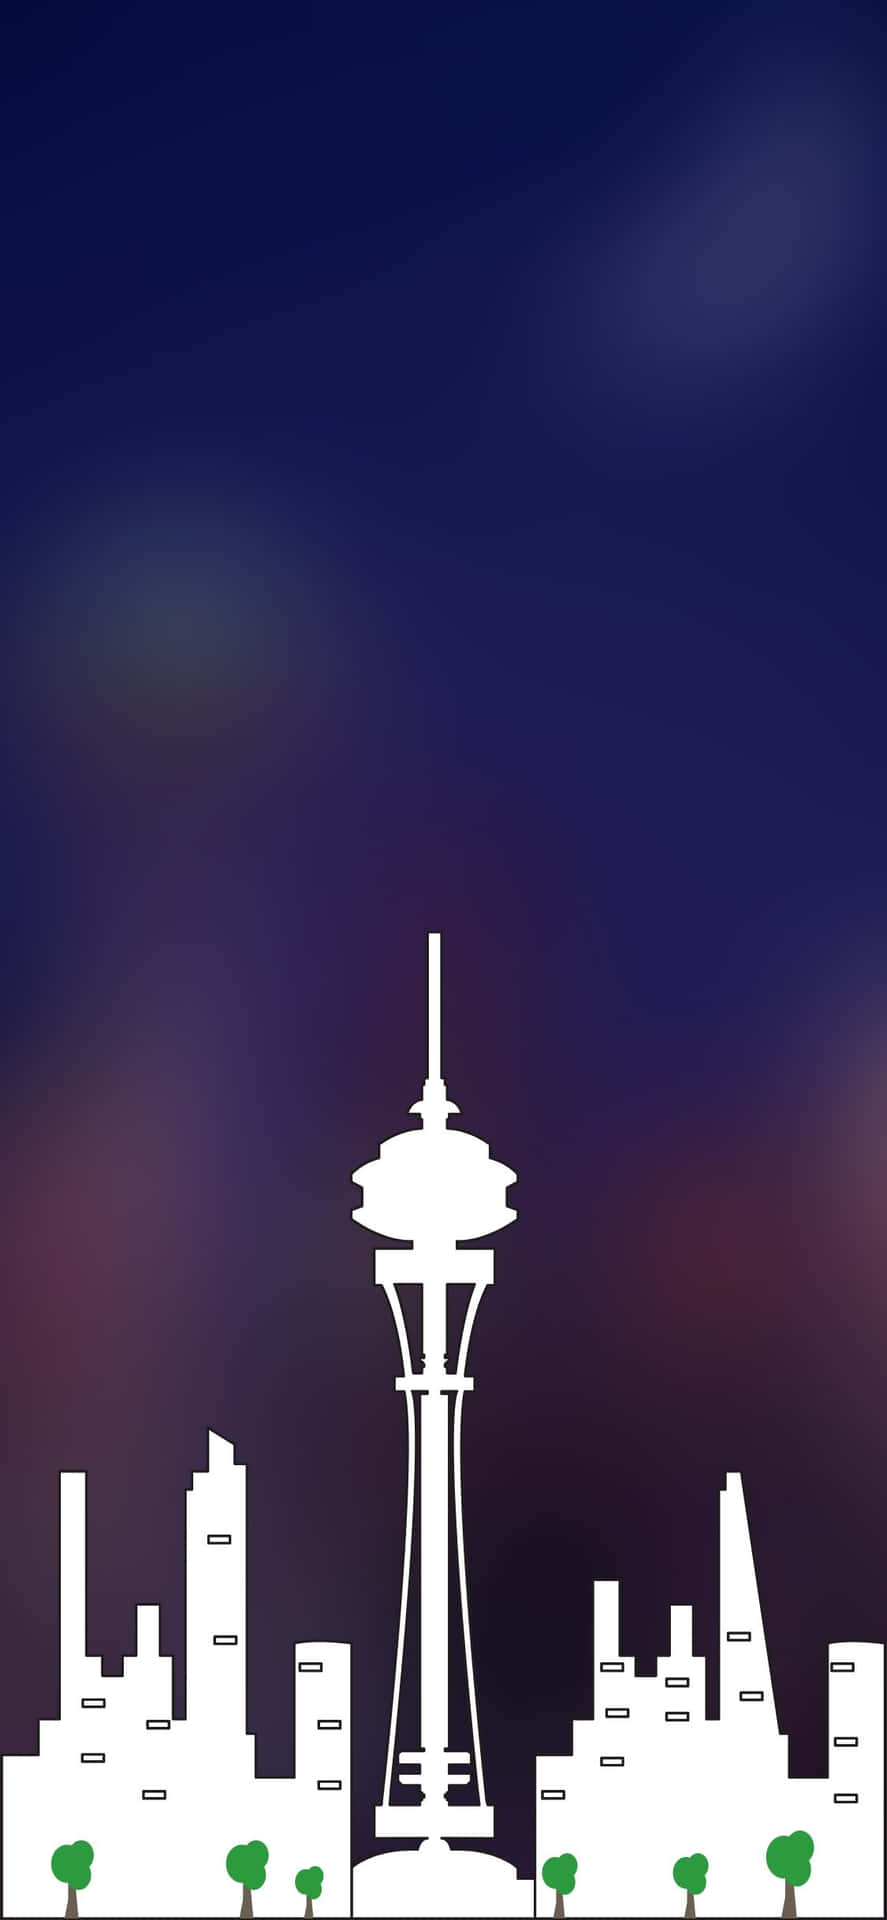 Impactantehorizonte De La Ciudad De Seattle Reflejado En El Cristal De Un Iphone X.